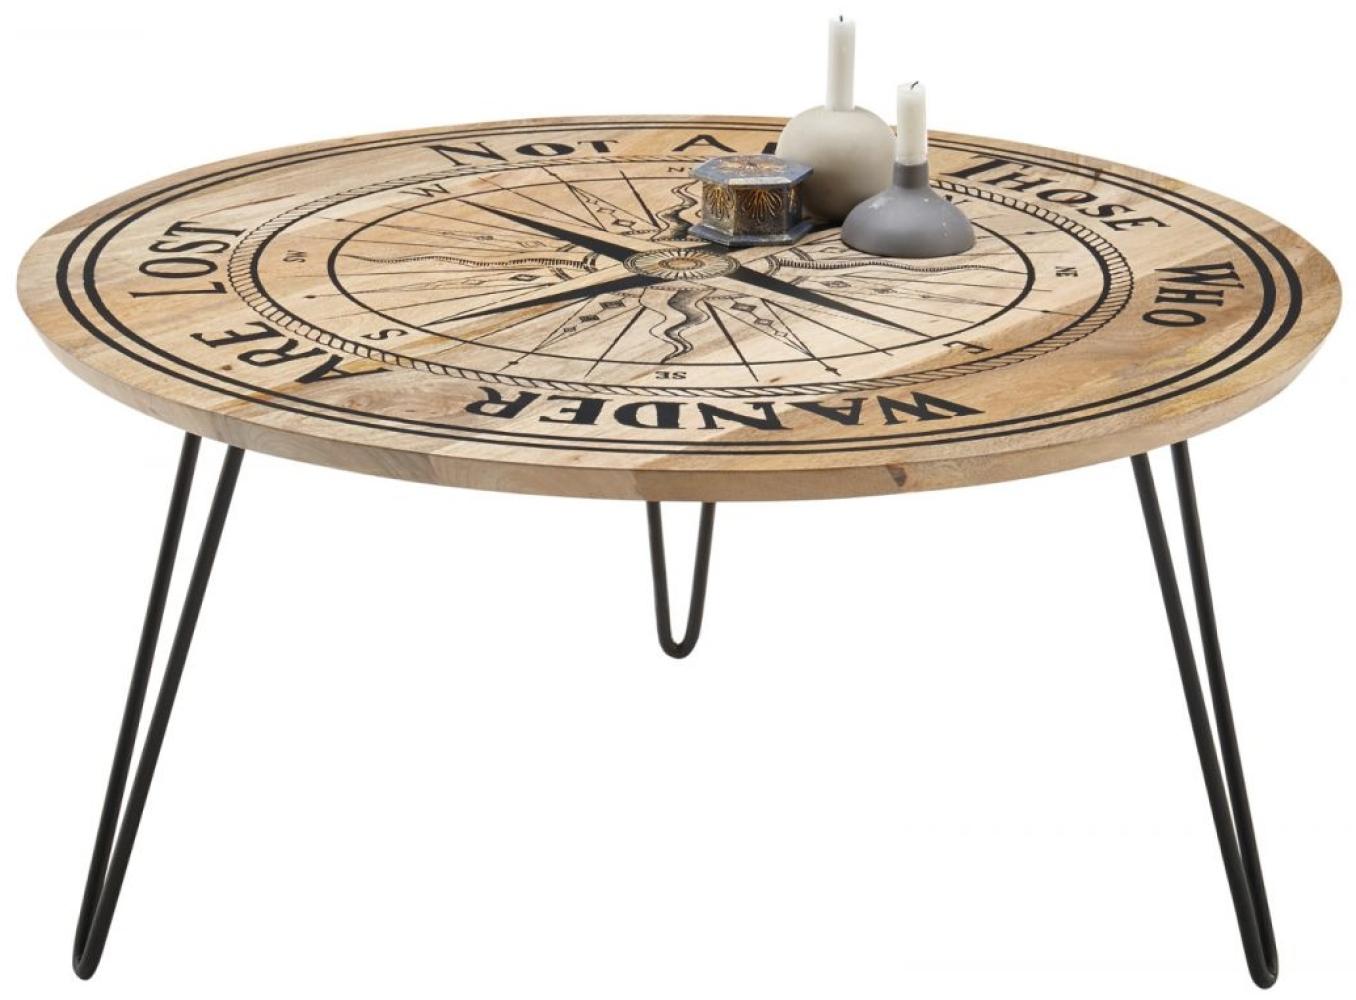 'Nevis' Couchtisch mit Kompass-Motiv, Mango, 46 x Ø 90 cm Bild 1